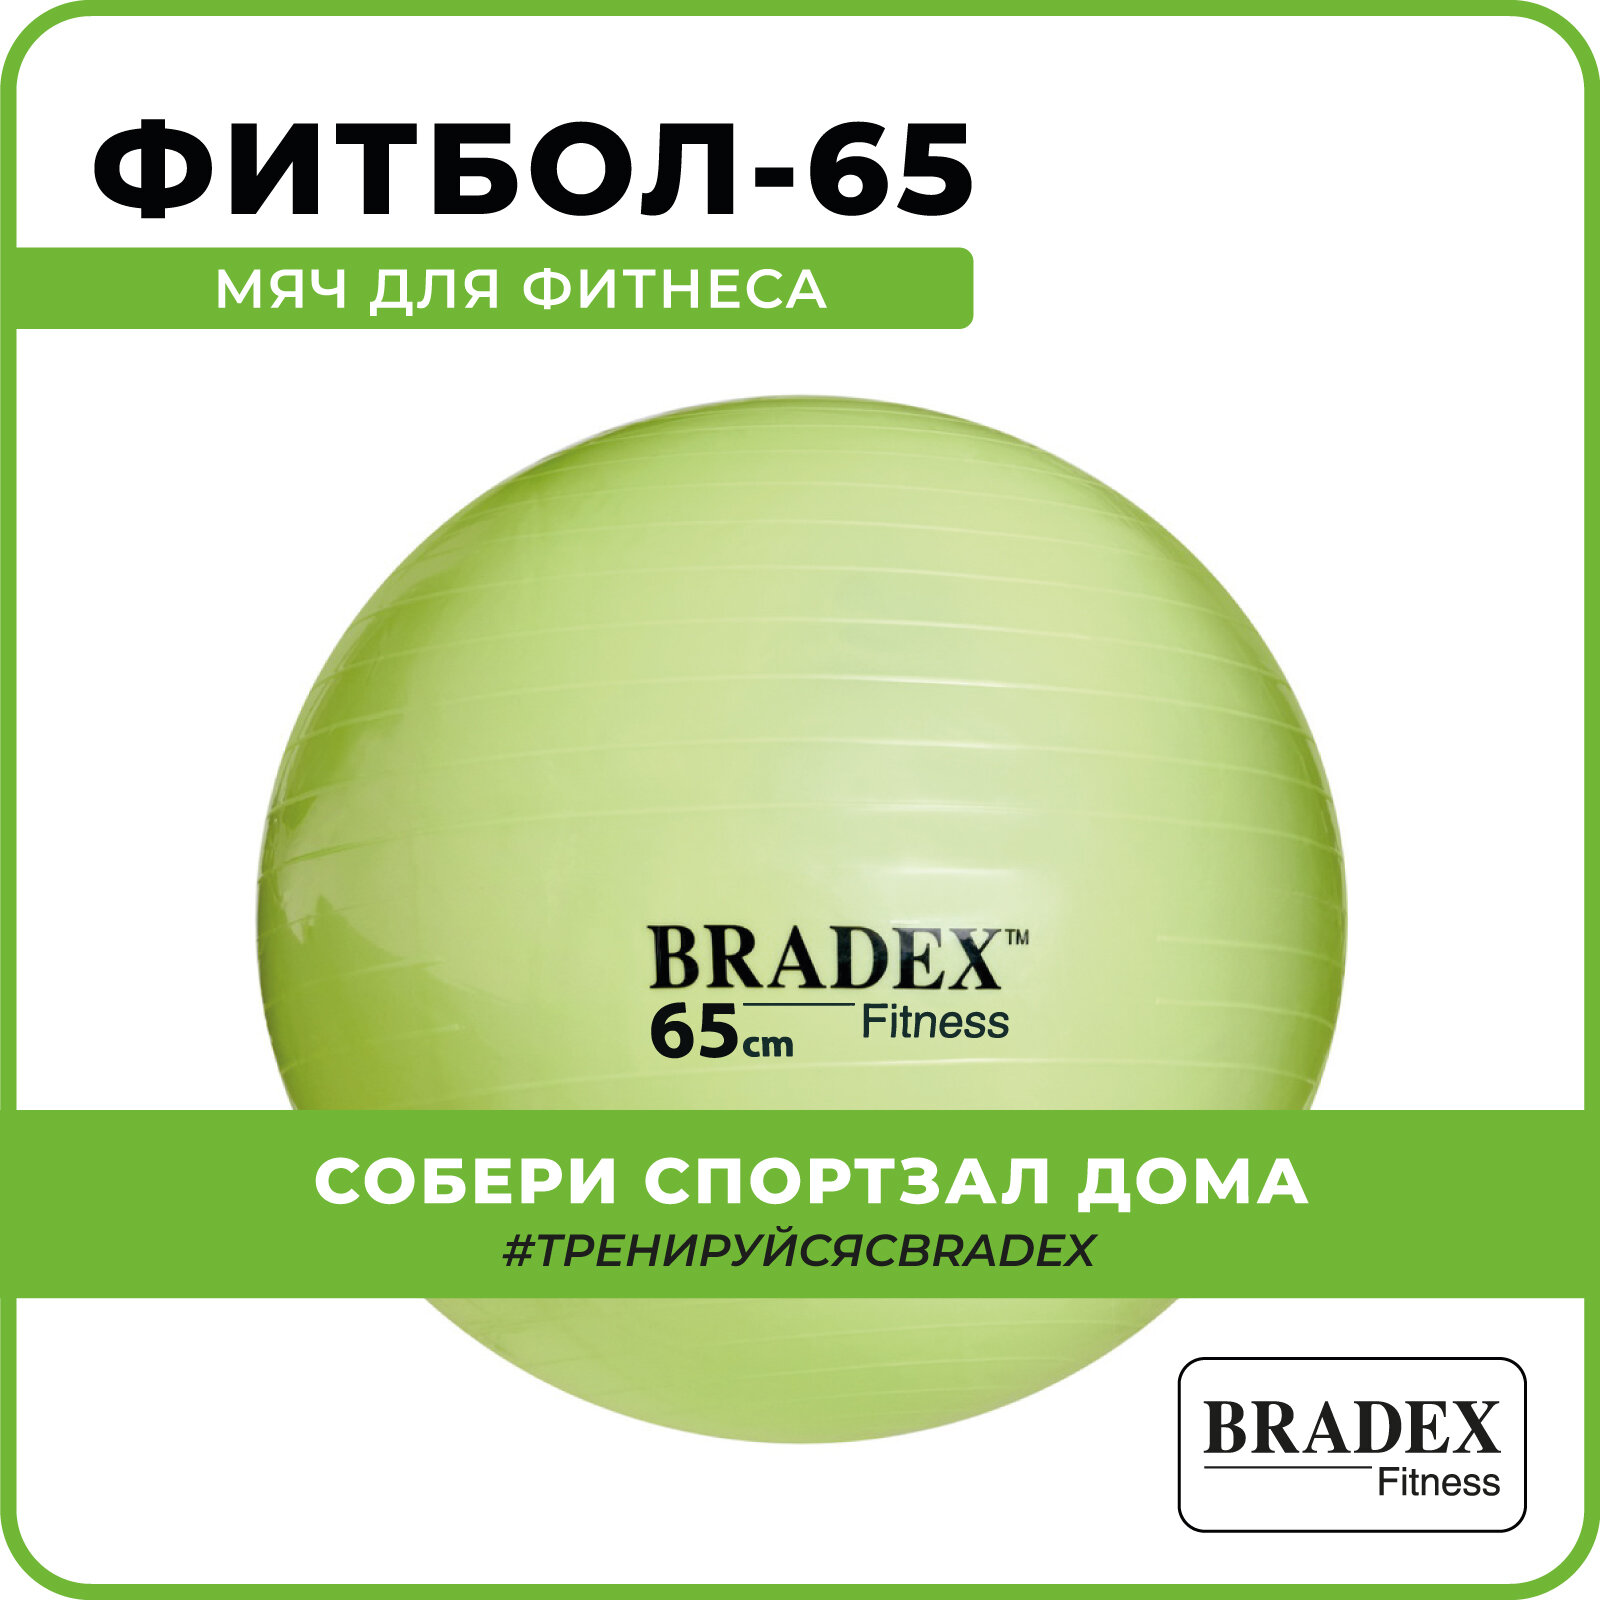 Мяч для фитнеса "ФИТБОЛ-65" Bradex SF 0720 с насосом, салатовый